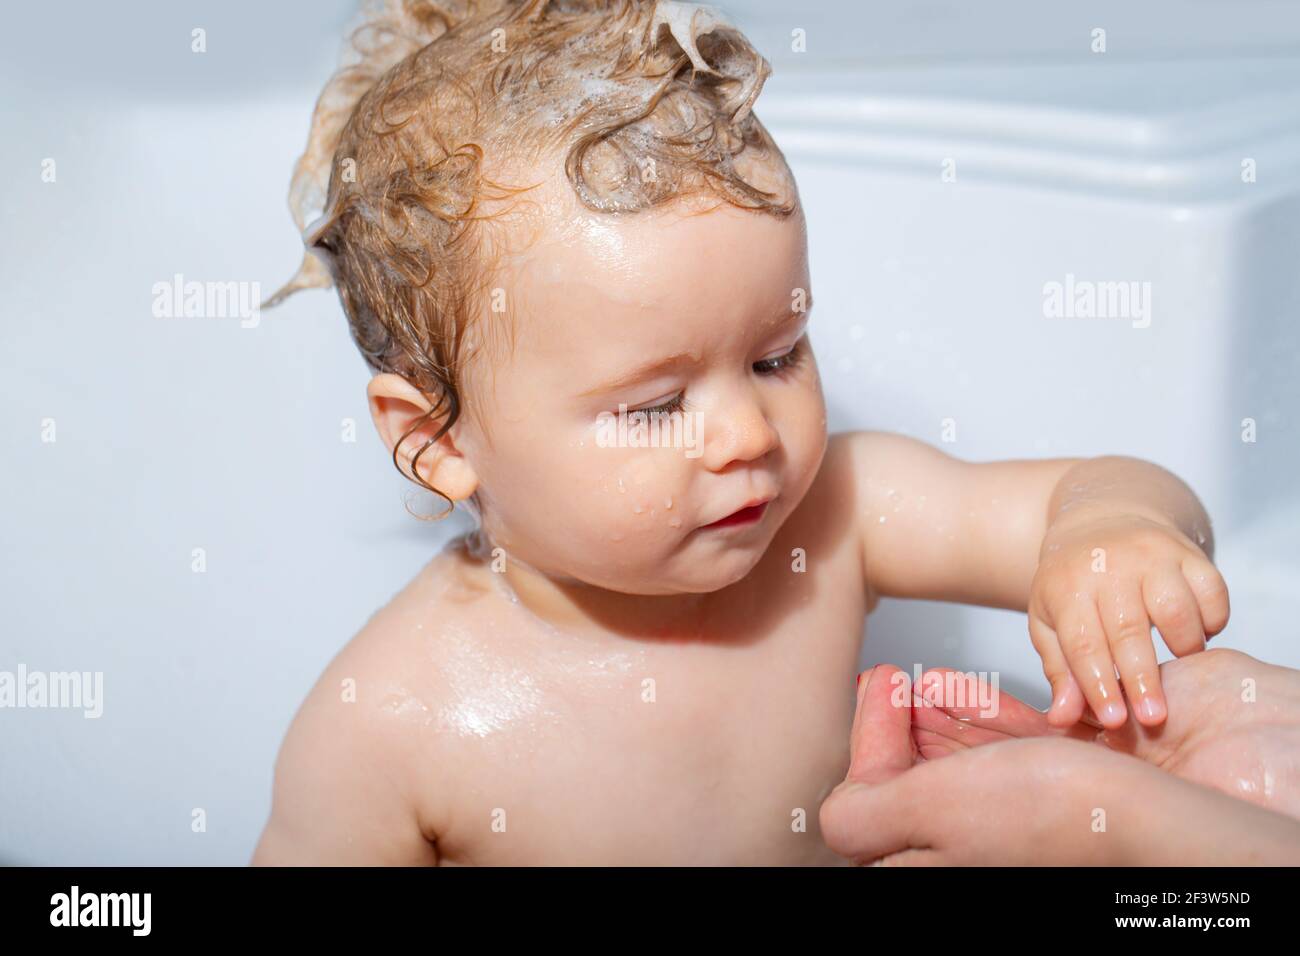 Kinderbaden. Baby Duschen. Porträt des Kindes Baden in einem Bad mit Schaum  Stockfotografie - Alamy